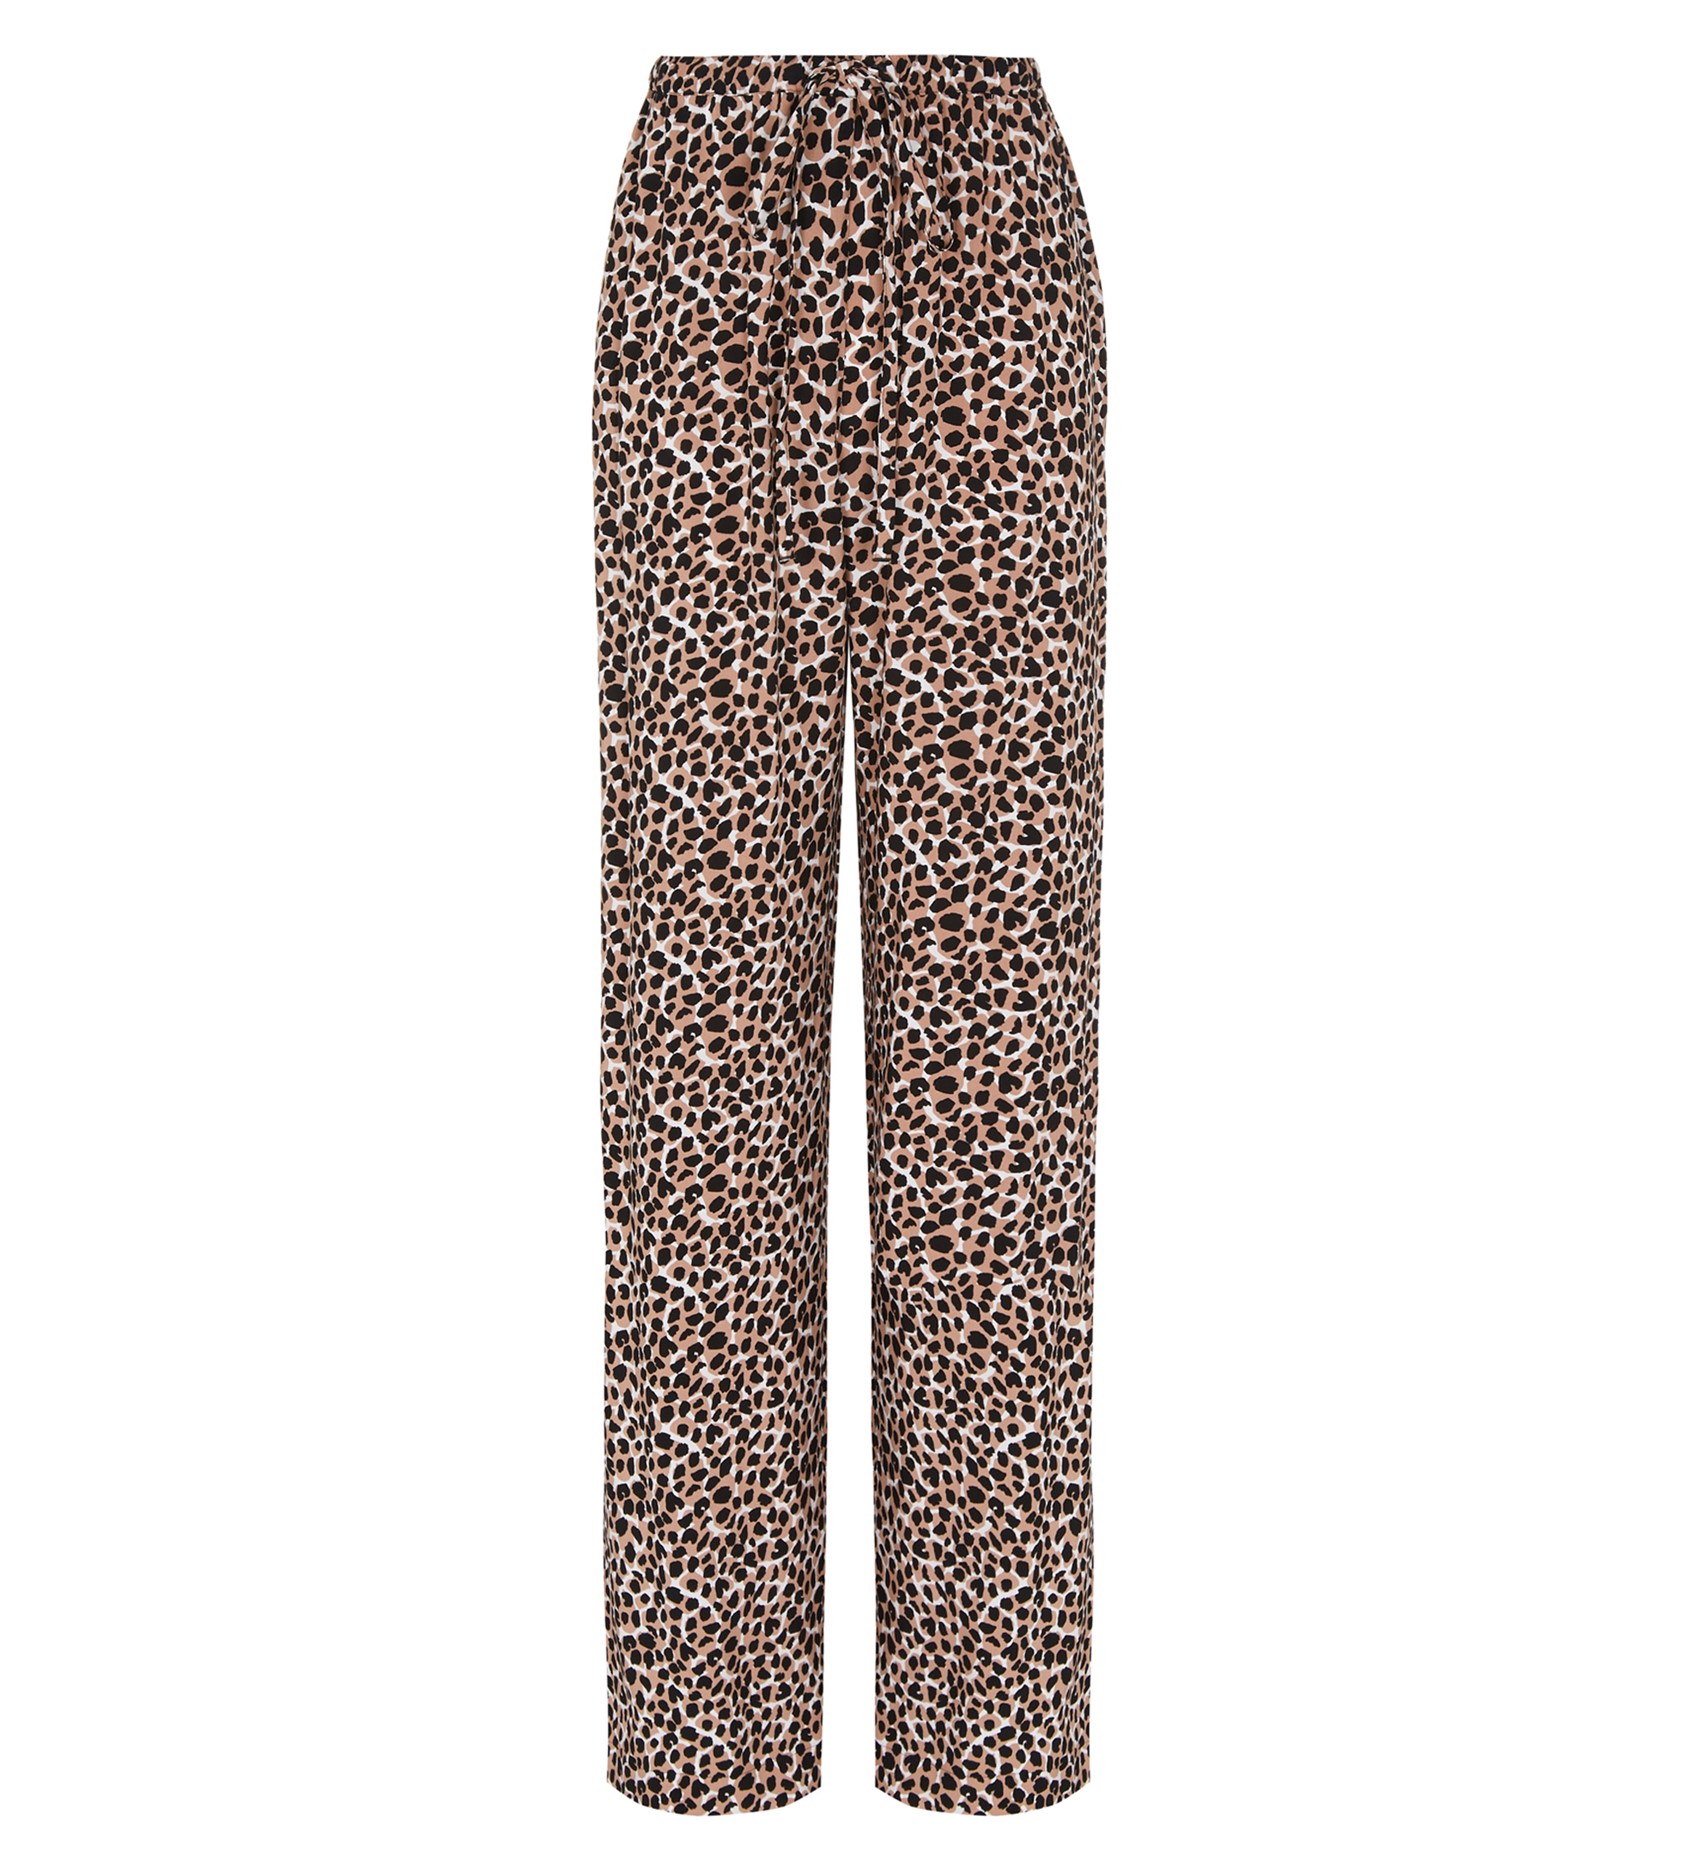 Beige Trousers in Giraffe Spotted Print | Finery London